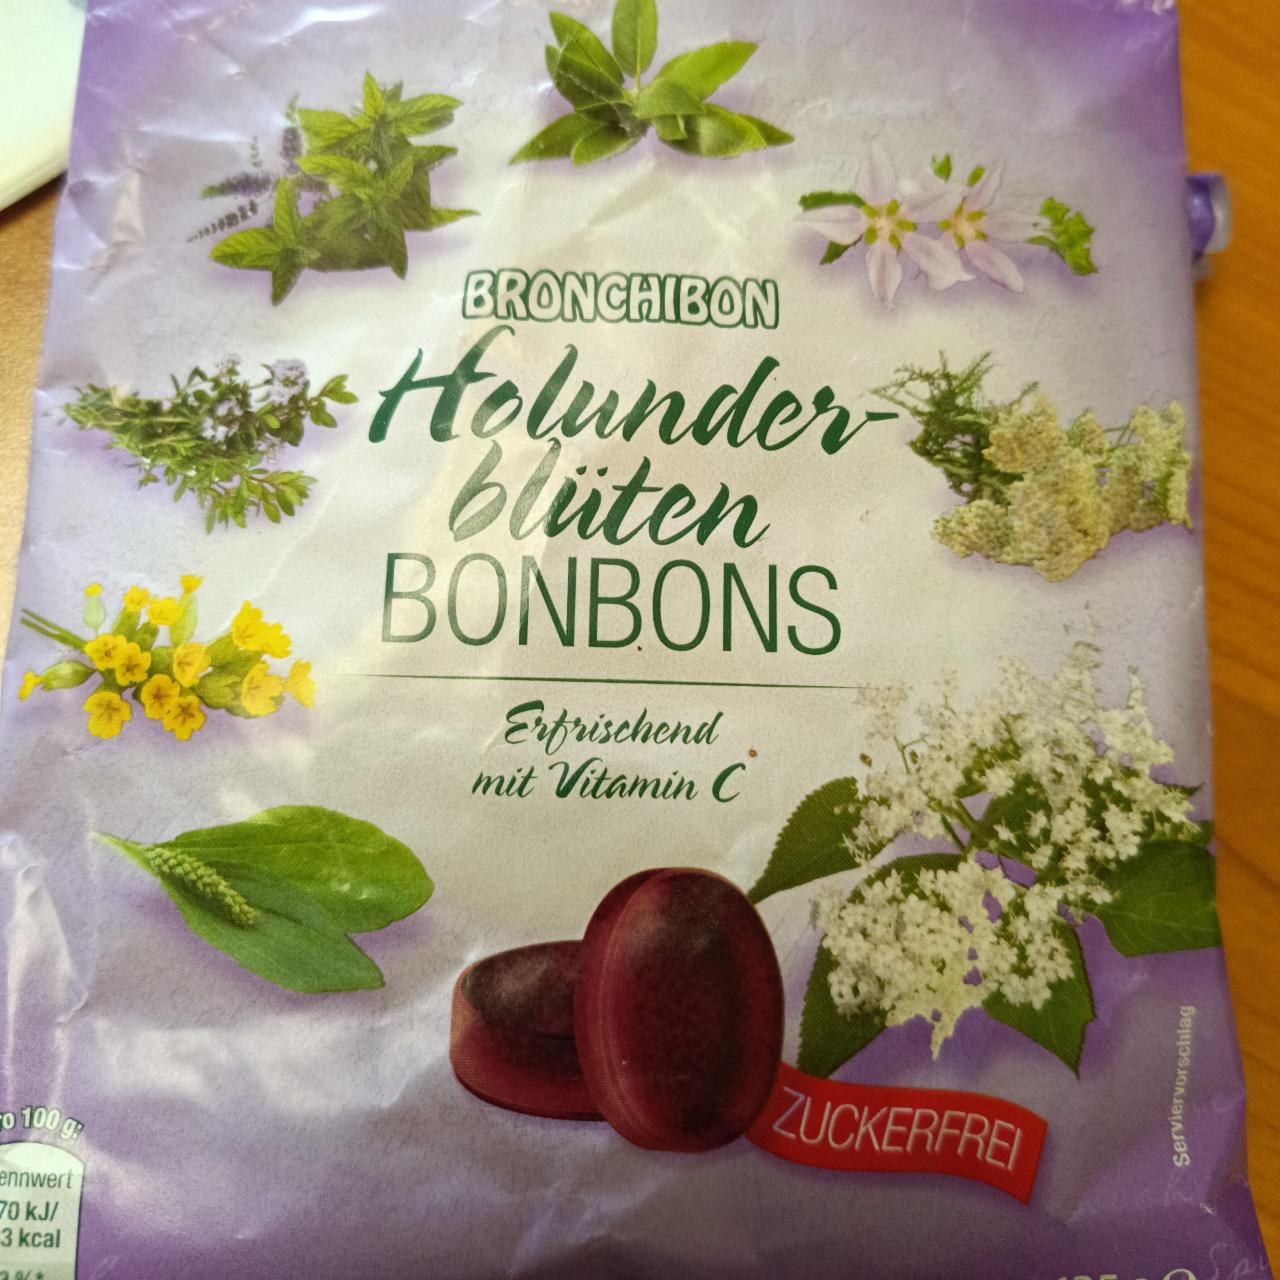 Fotografie - Holunder-blüten bonbons Bronchibon